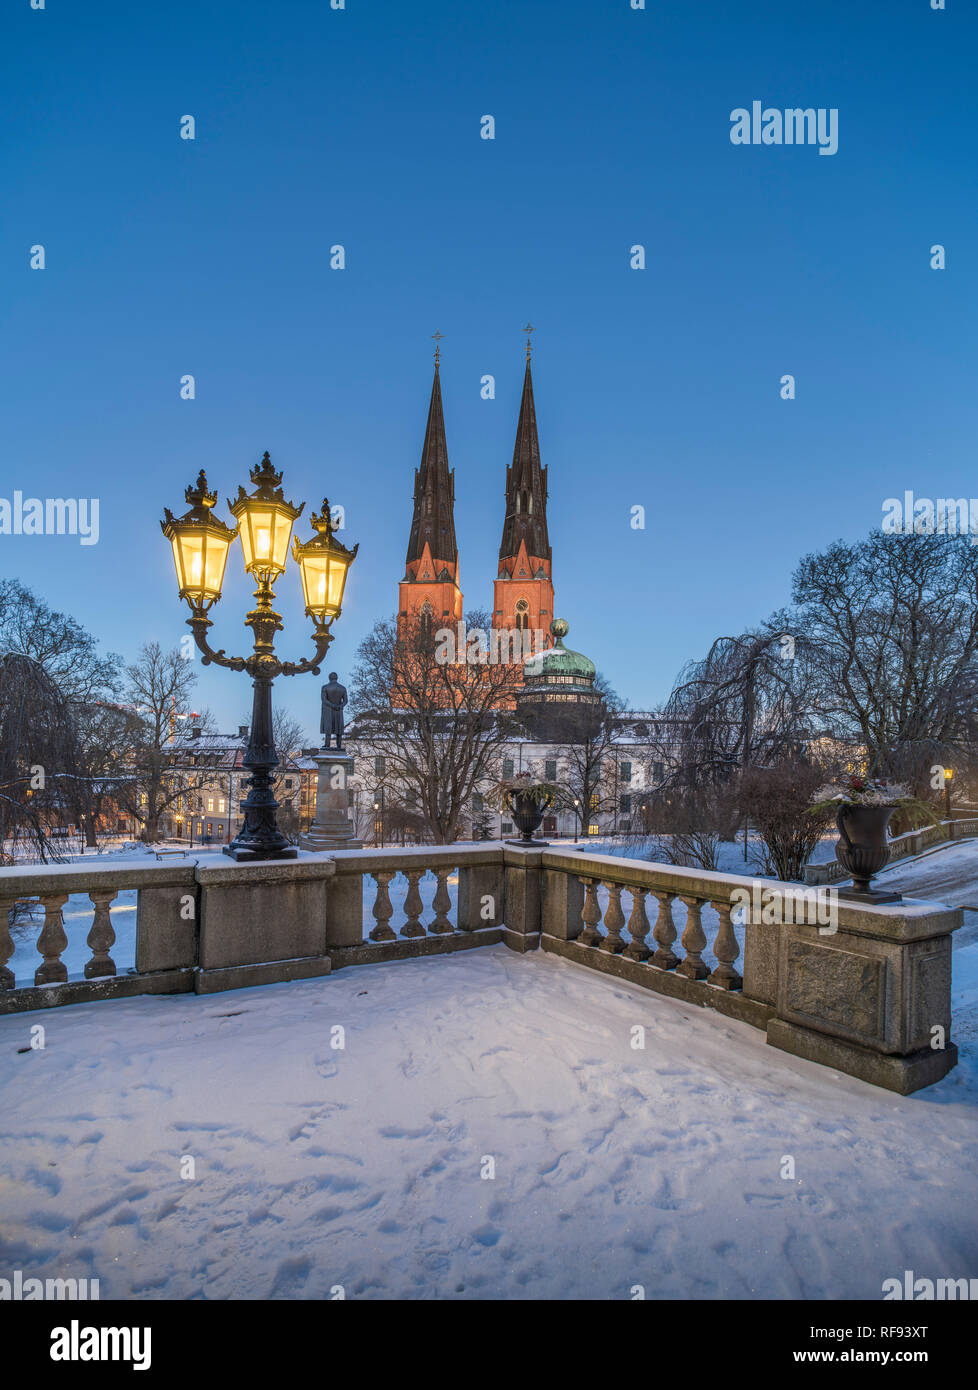 La catedral y Gustavianum durante la noche en invierno. Vista desde el parque de la Universidad de Uppsala, Suecia, Escandinavia Foto de stock